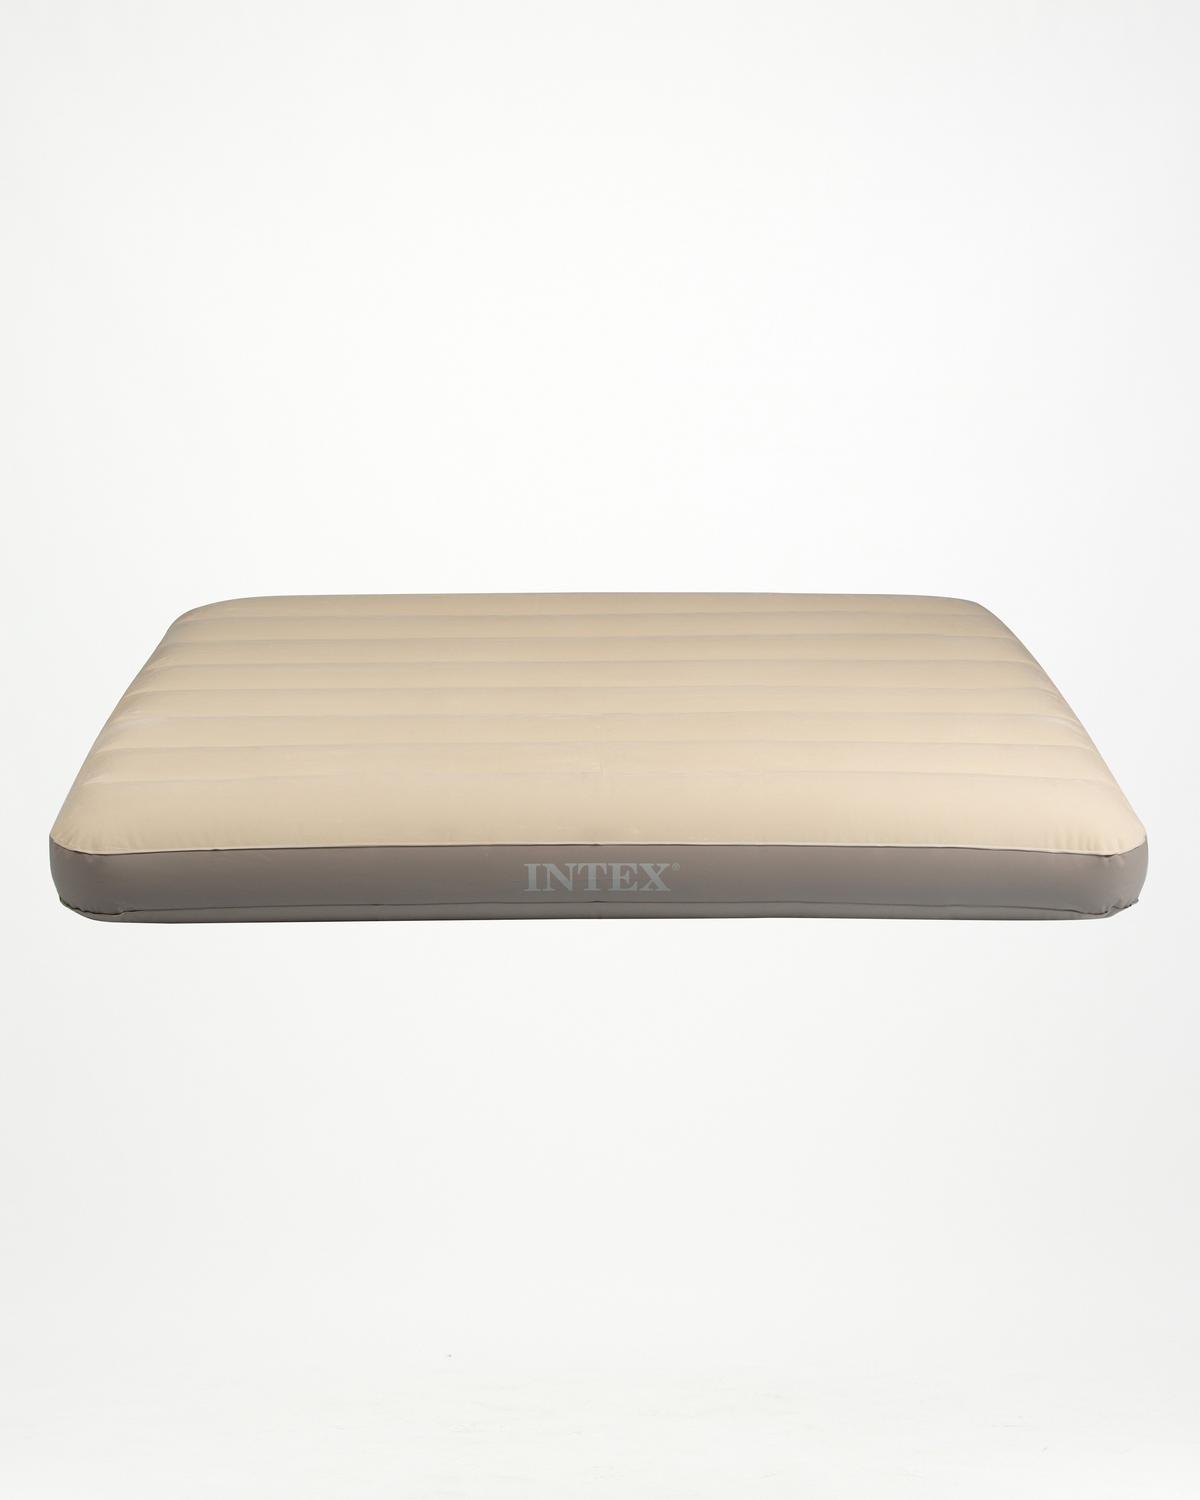 Intex Standard Dura-Beam Double Air Mattress -  Grey